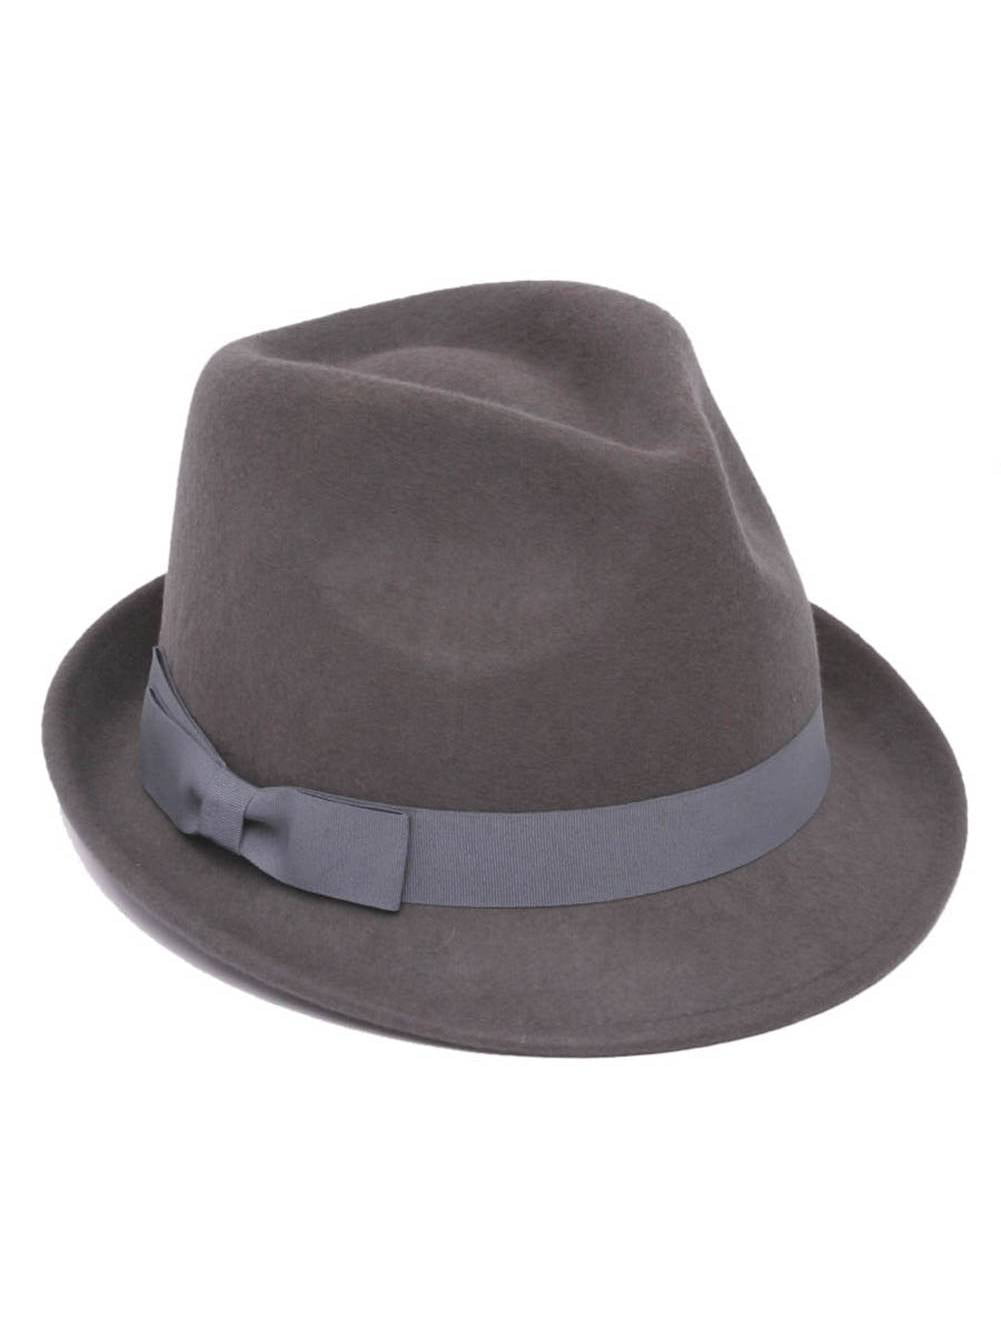 Mens Wool Grey Trilby Fedora Hat